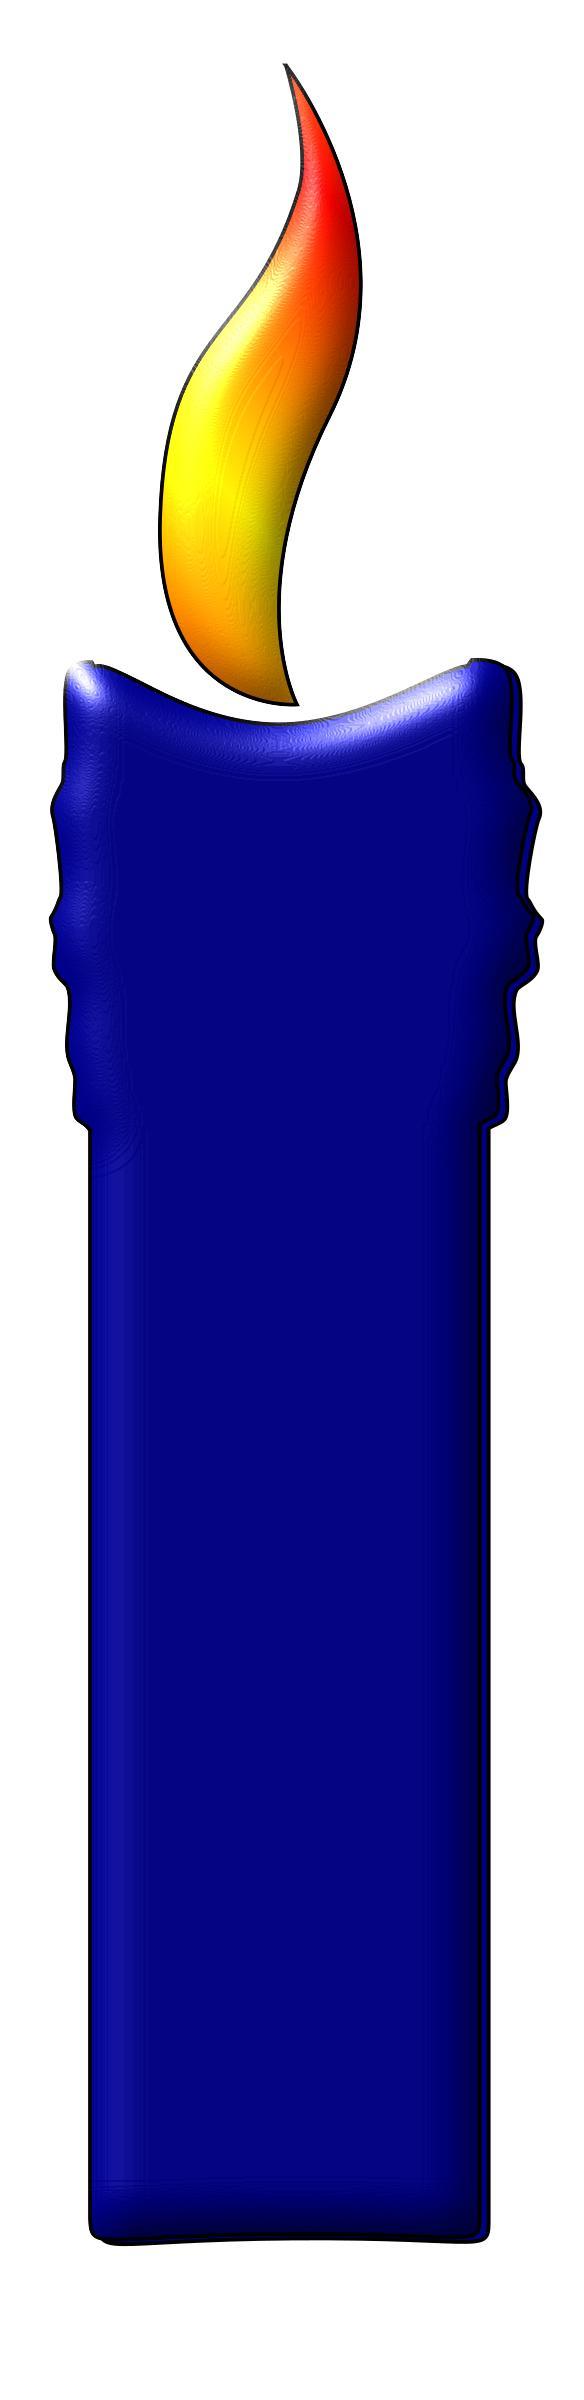 A Blue Color Candle png transparent